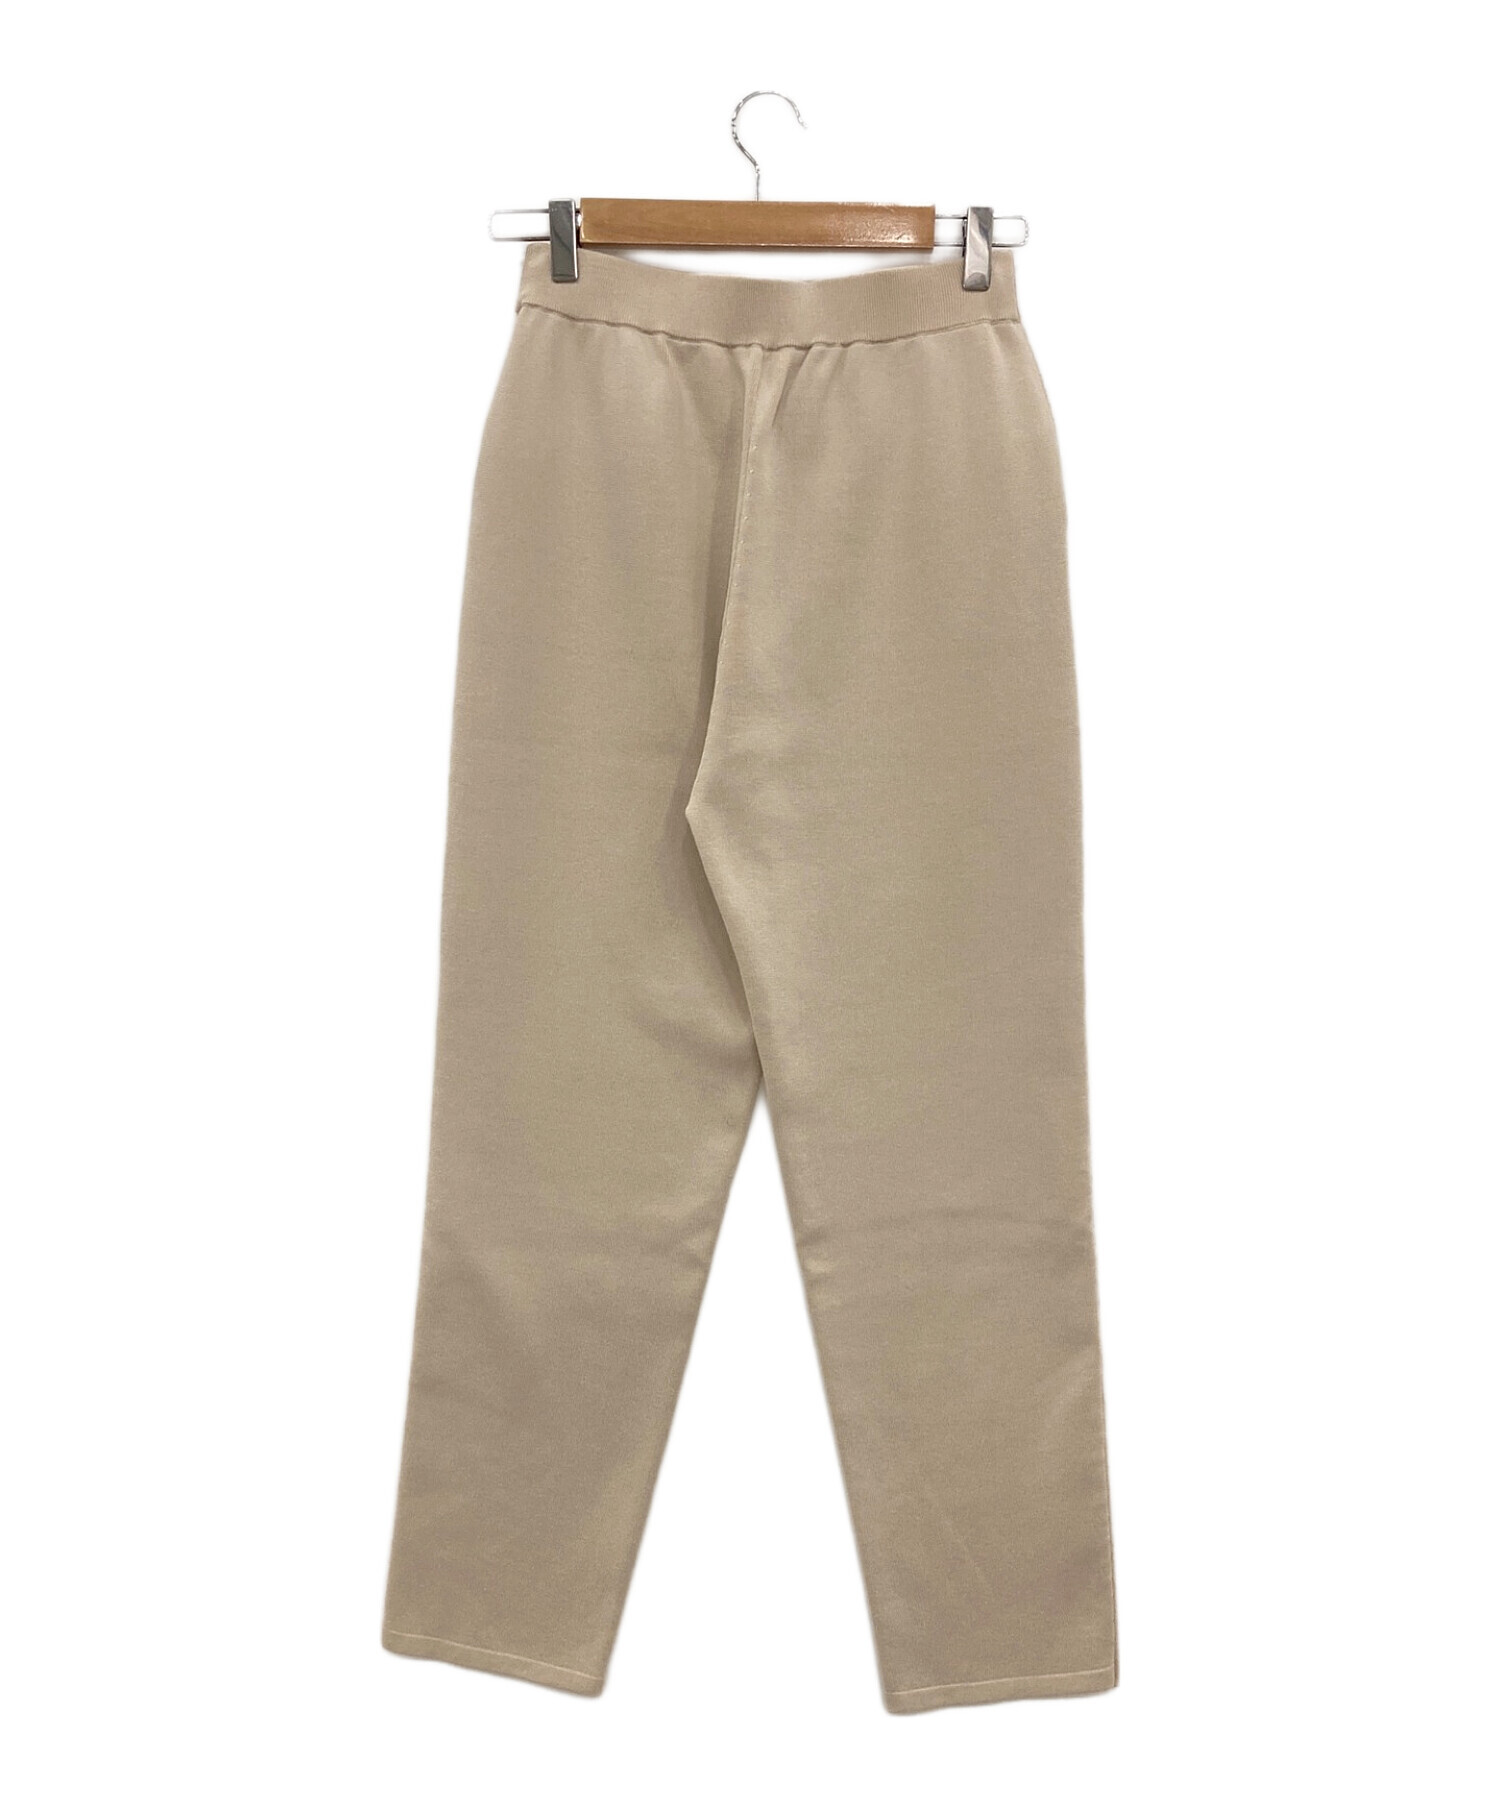 ebure (エブール) RonHerman (ロンハーマン) Cotton Silk Easy Pants ベージュ サイズ:36